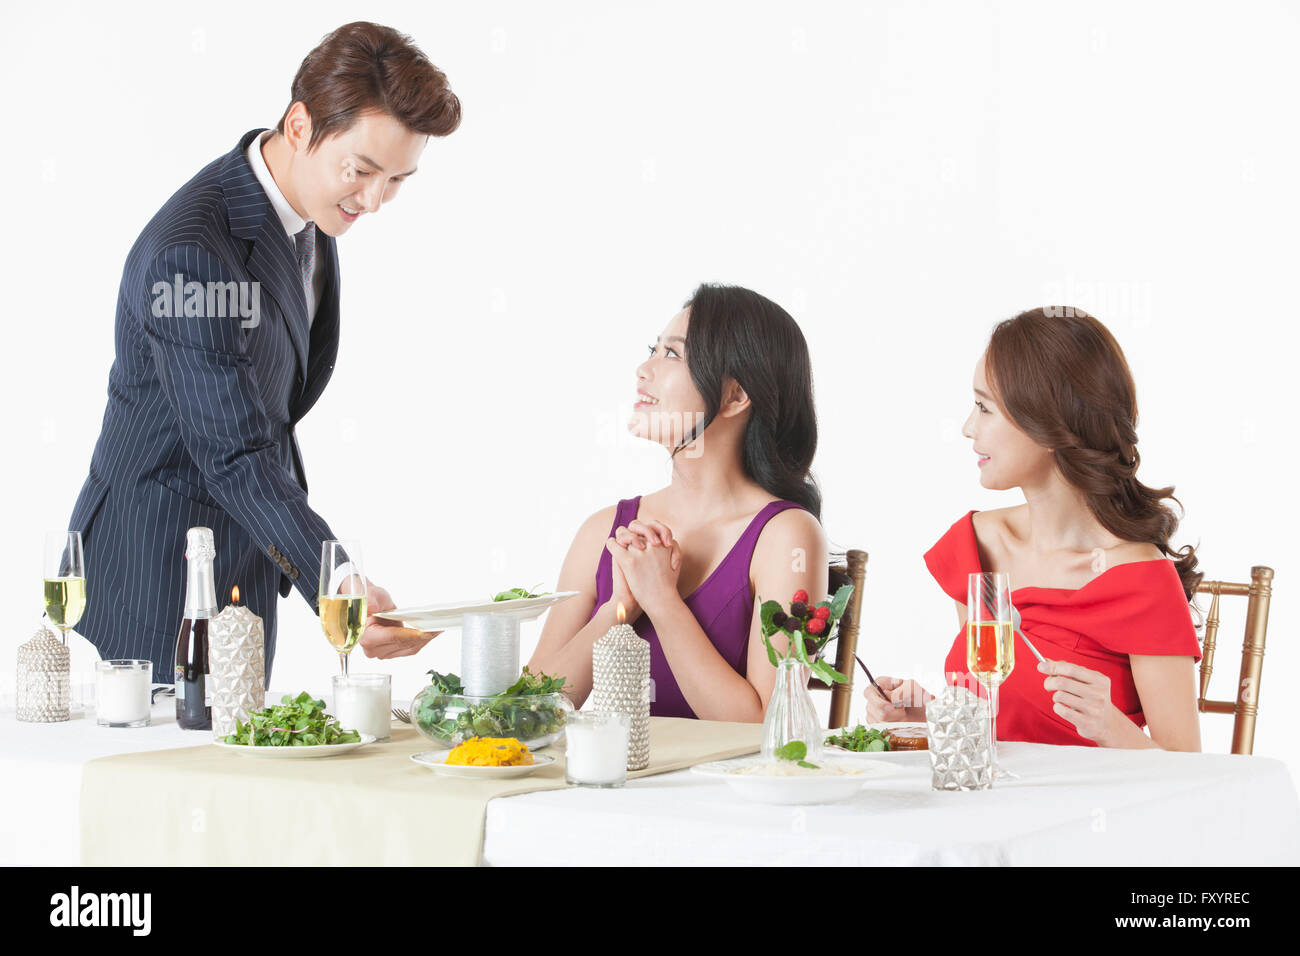 Seite Ansicht Porträt des jungen Mannes Essen für zwei junge Frauen, die am Tisch serviert Stockfoto